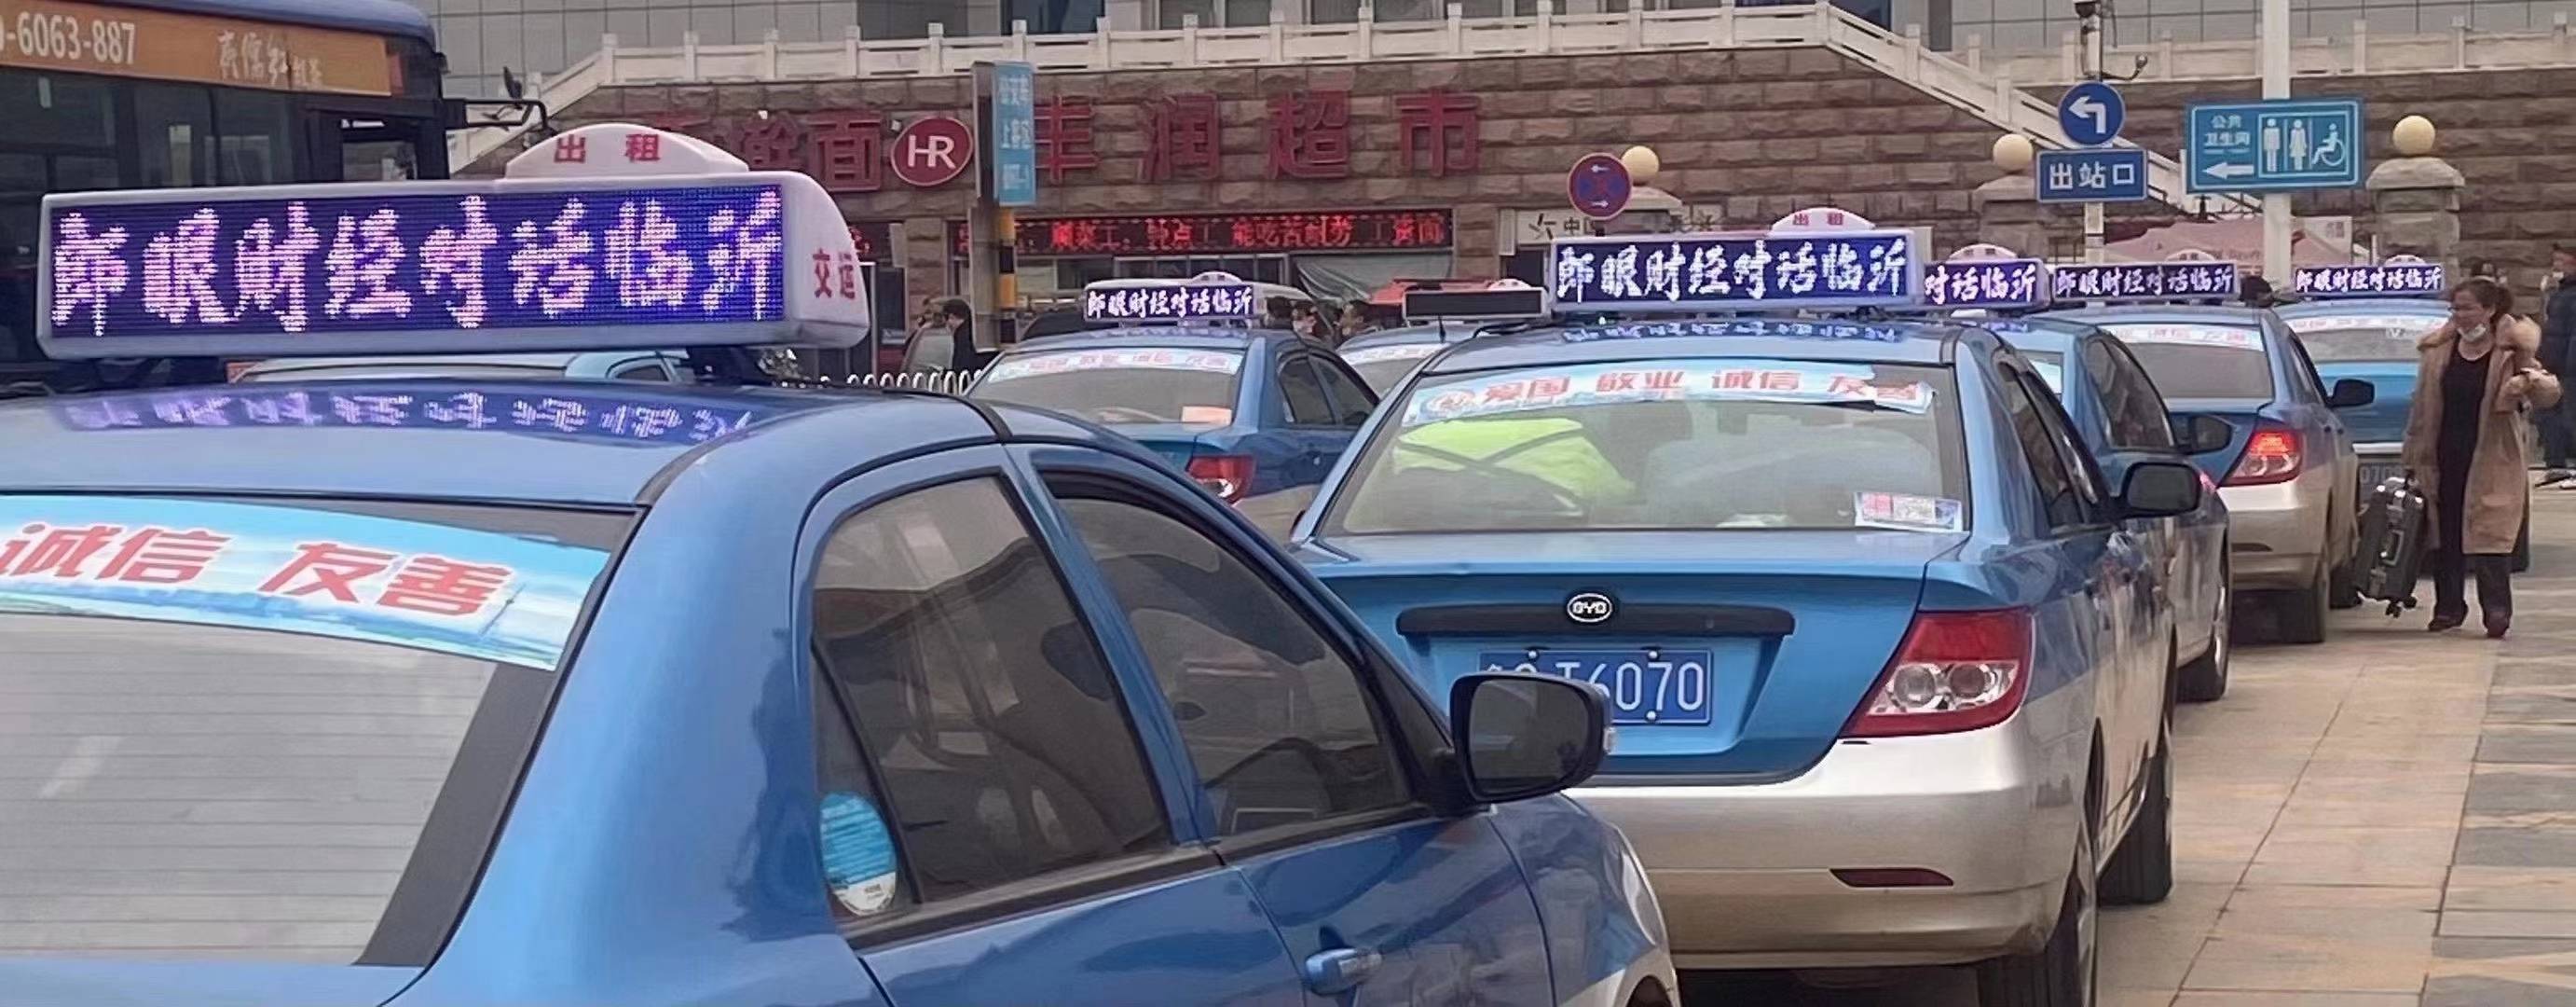 山东临沂出租车顶灯LED广告出租车智能终端